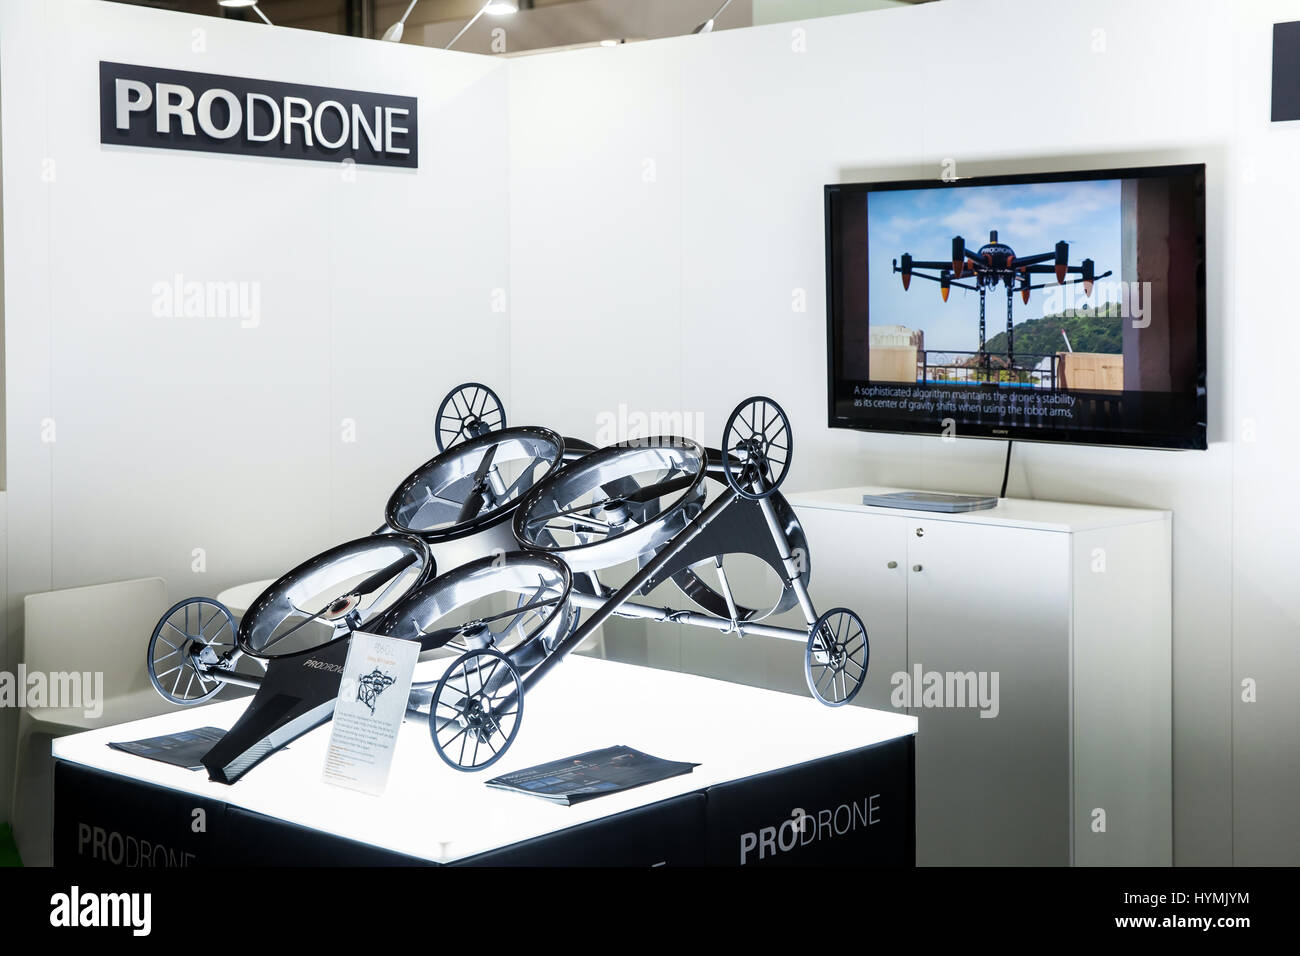 Prodrone Unternehmen mit dual Roboter Arm große Drohne Teilnahme an Ausstellung Messe Cebit 2017 in Hannover Messe, Deutschland Stockfoto